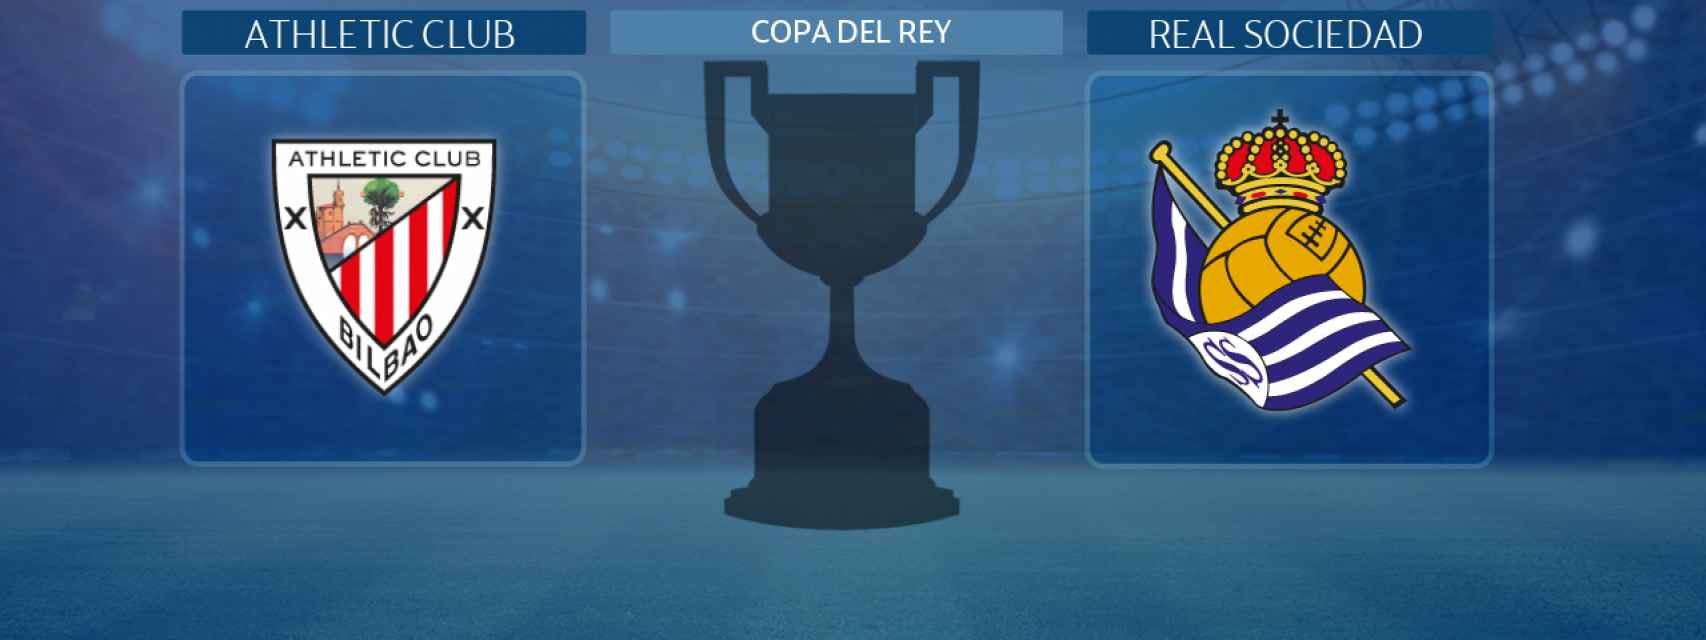 Athletic Club - Real Sociedad, la final de la Copa del Rey 2019/20